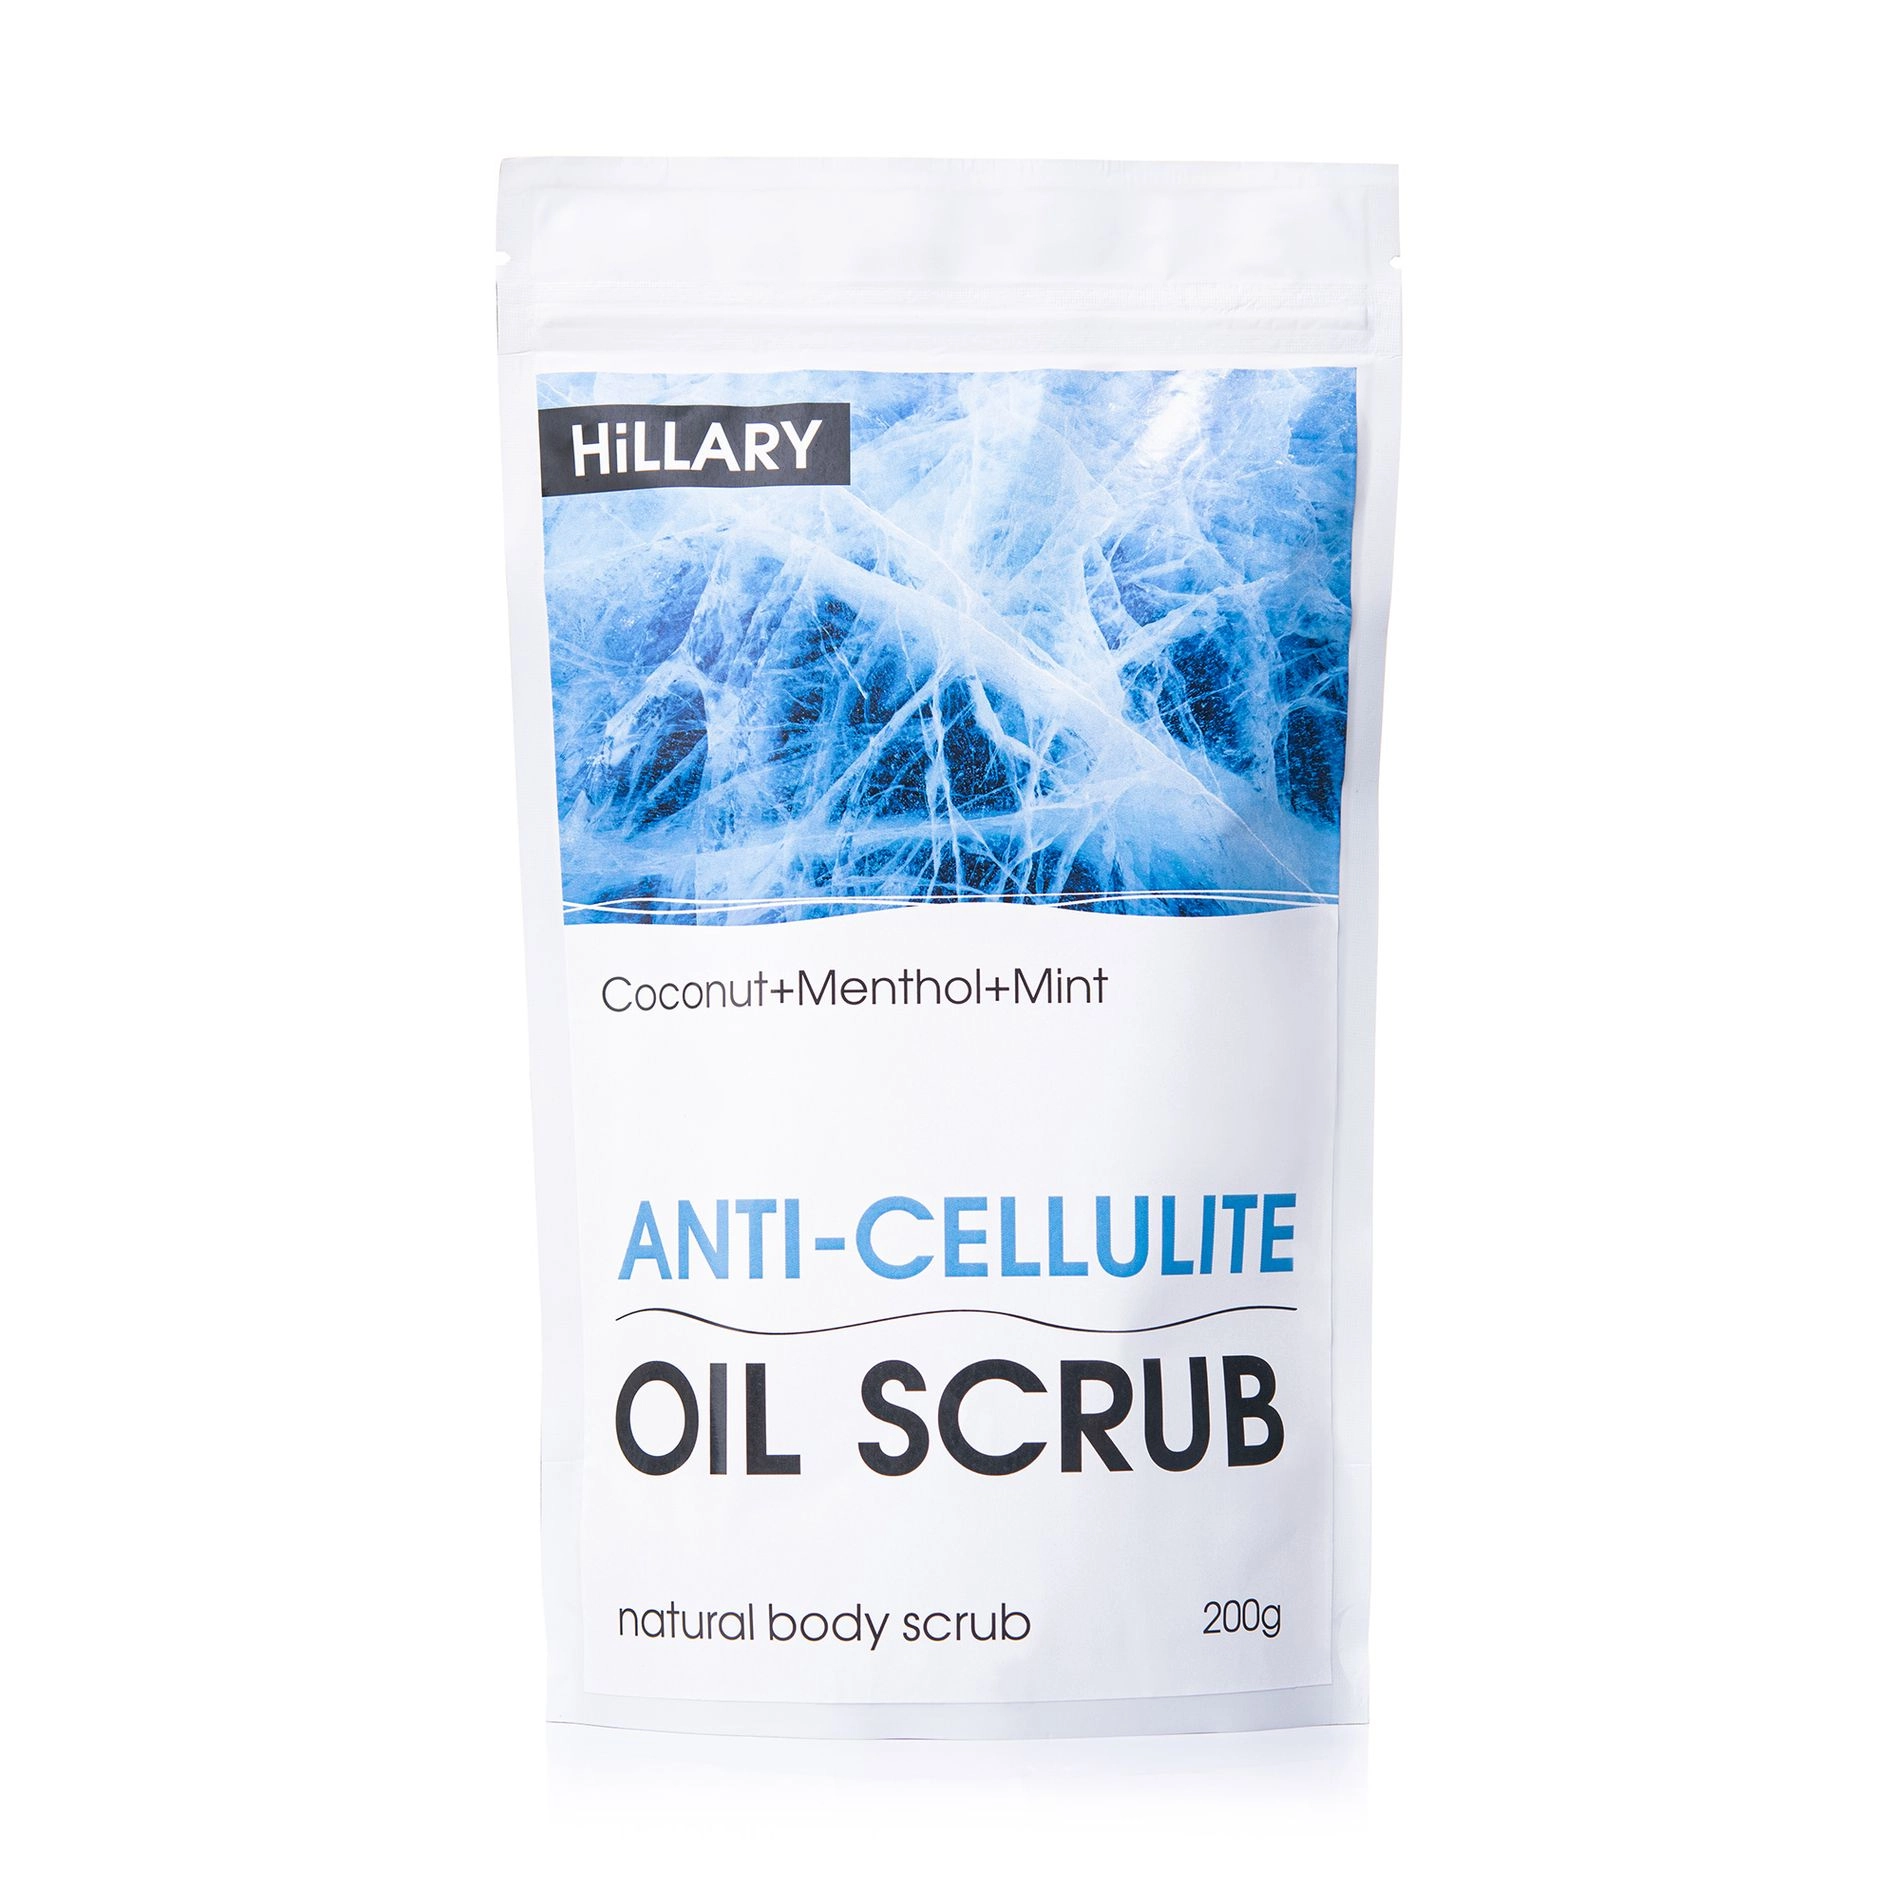 Hillary Антицеллюлитный охлаждающий скраб для тела Anti-Cellulite Oil Scrub, 200 г - фото N1